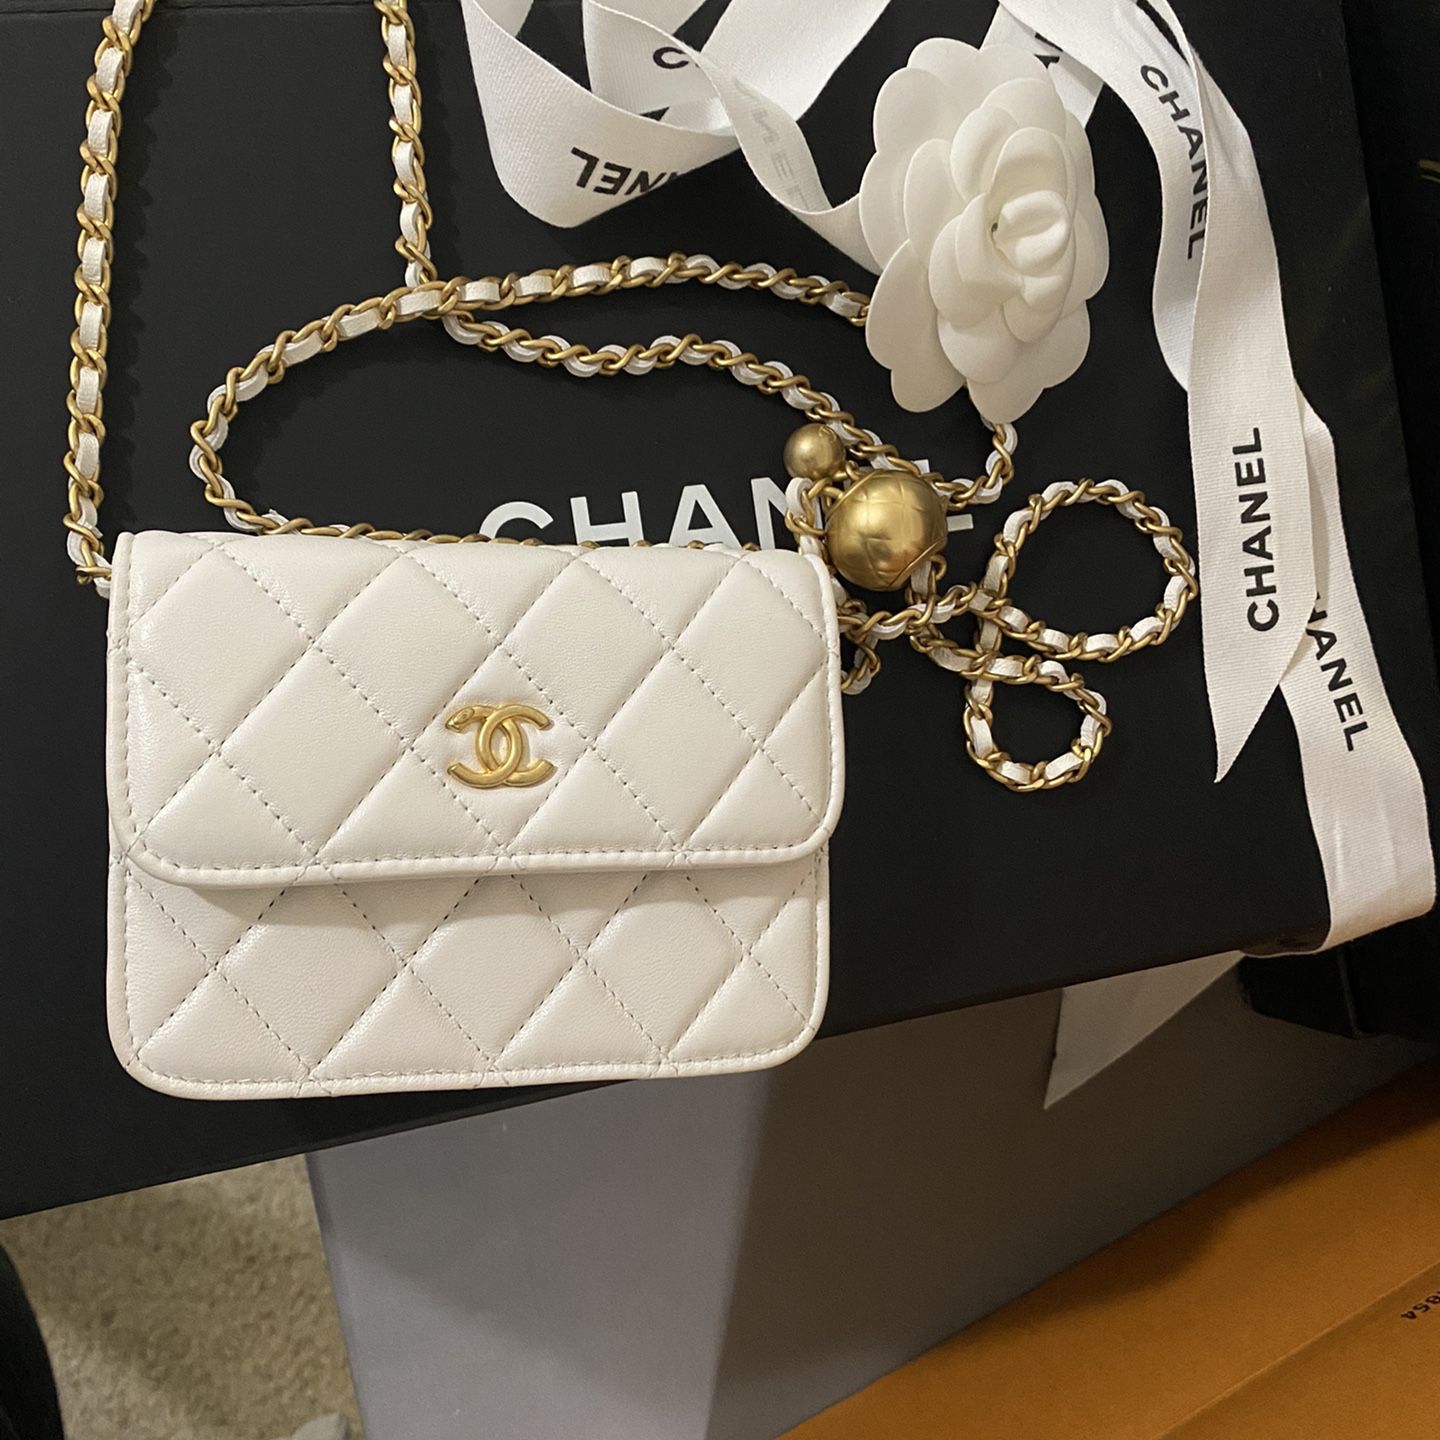 Chanel Pearl Crush Belt/Cross Body Bag for Sale in Everett, WA - OfferUp